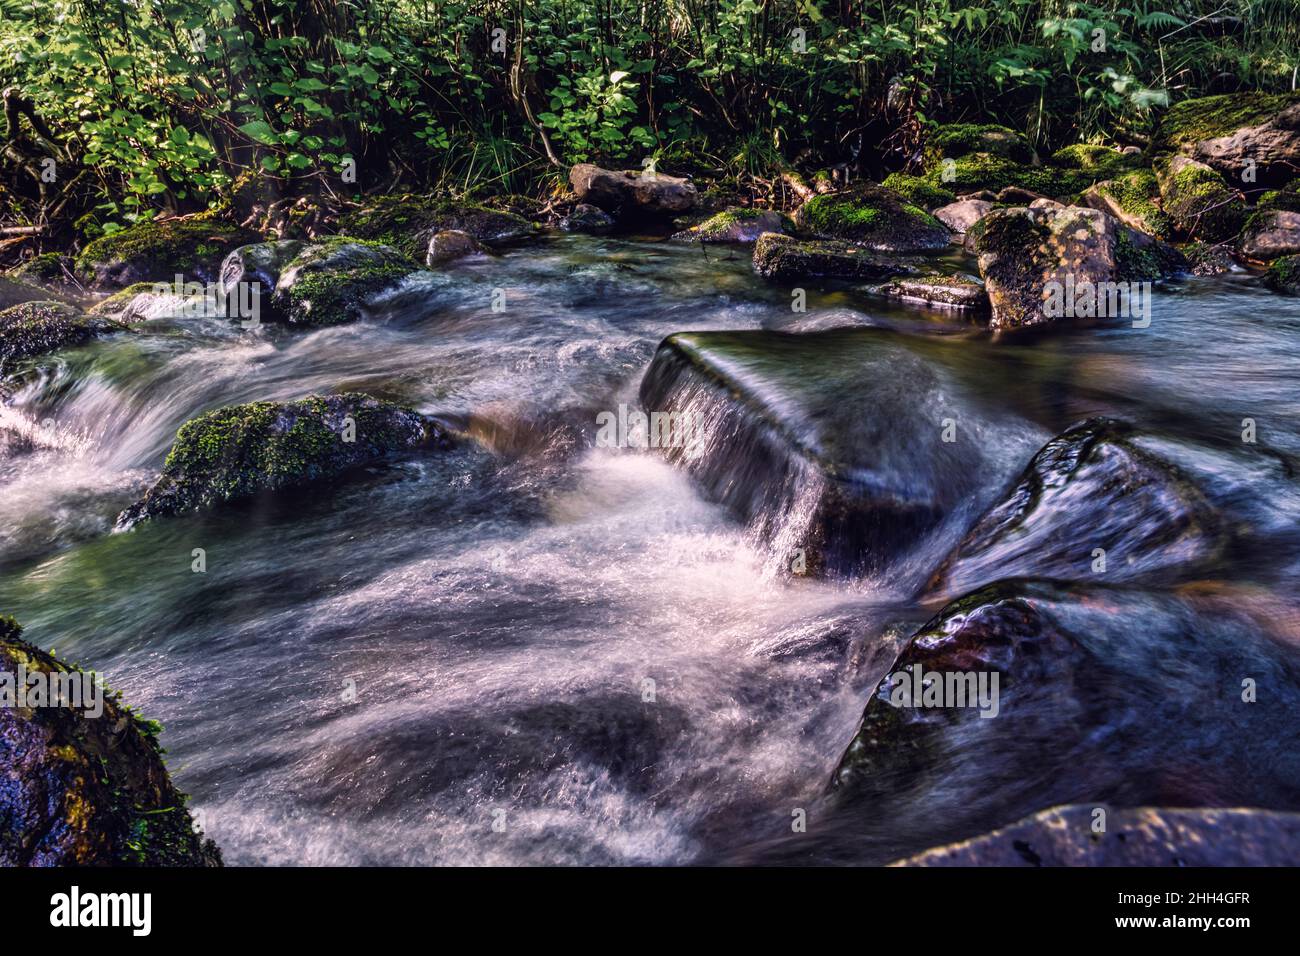 Belle rivière avec eau courante, rapides, rochers mousse et forêt en arrière-plan, longue exposition à volda, norvège Banque D'Images